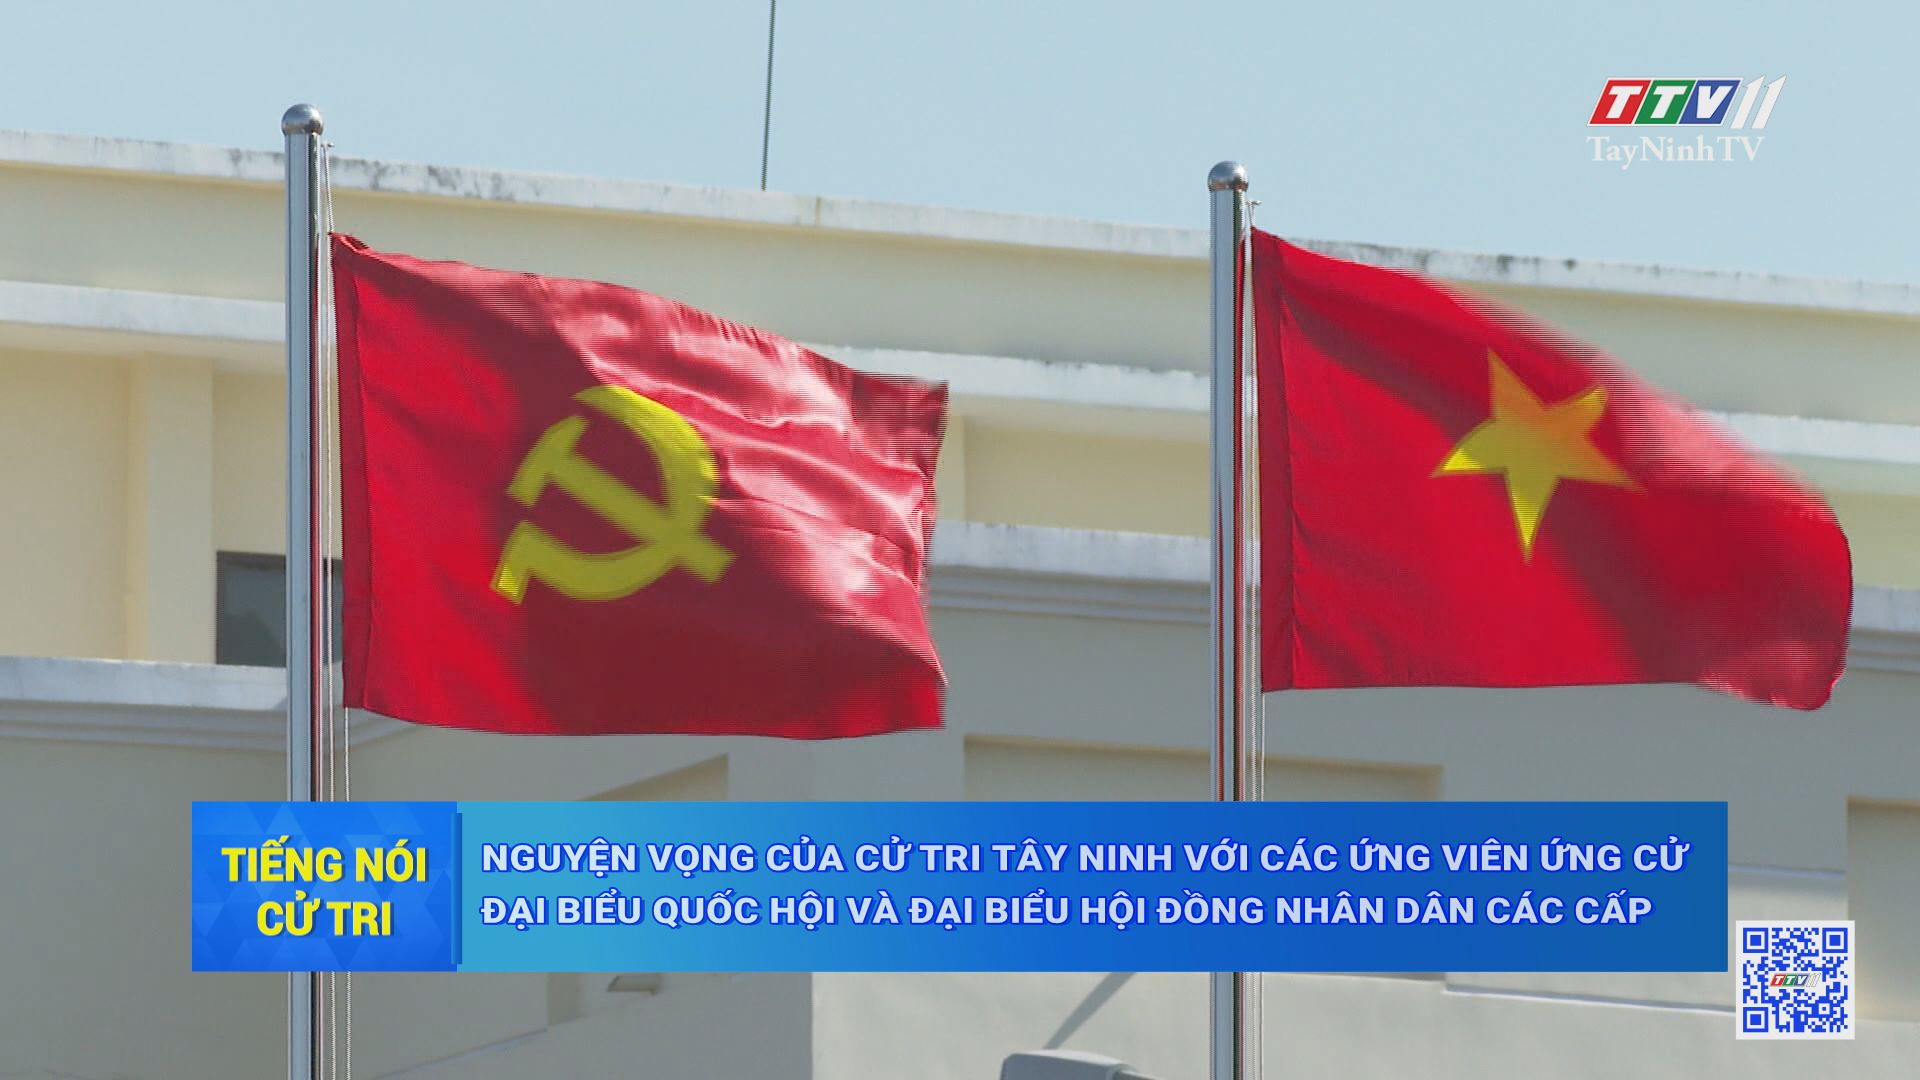 Nguyện vọng của cử tri Tây Ninh với ứng viên ứng cử Đại biểu Quốc hội và Đại biểu HĐND các cấp | TIẾNG NÓI CỬ TRI | TayNinhTV